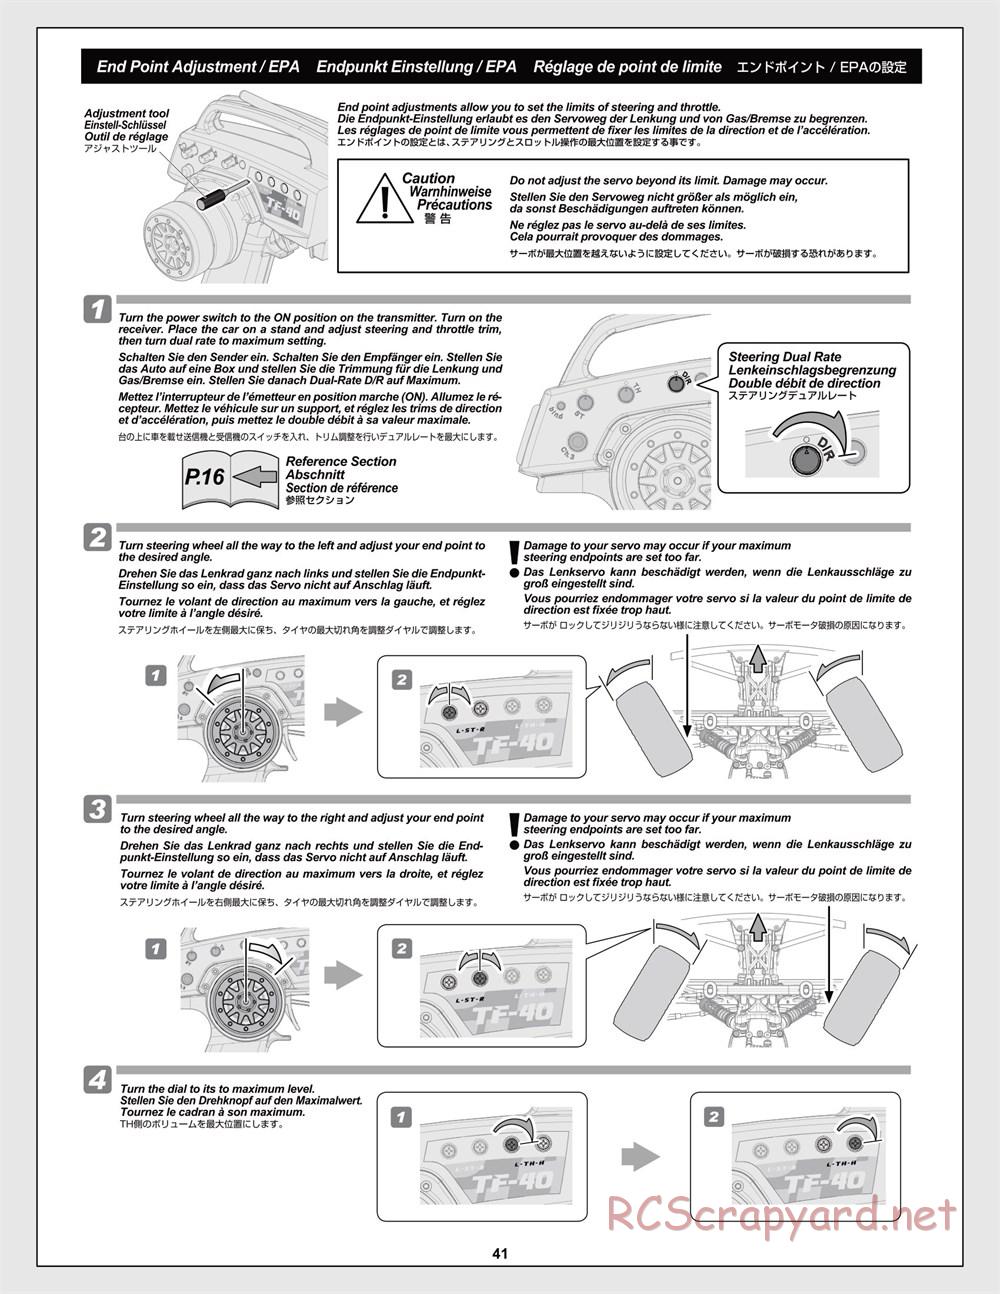 HPI - Trophy Flux Buggy - Manual - Page 41